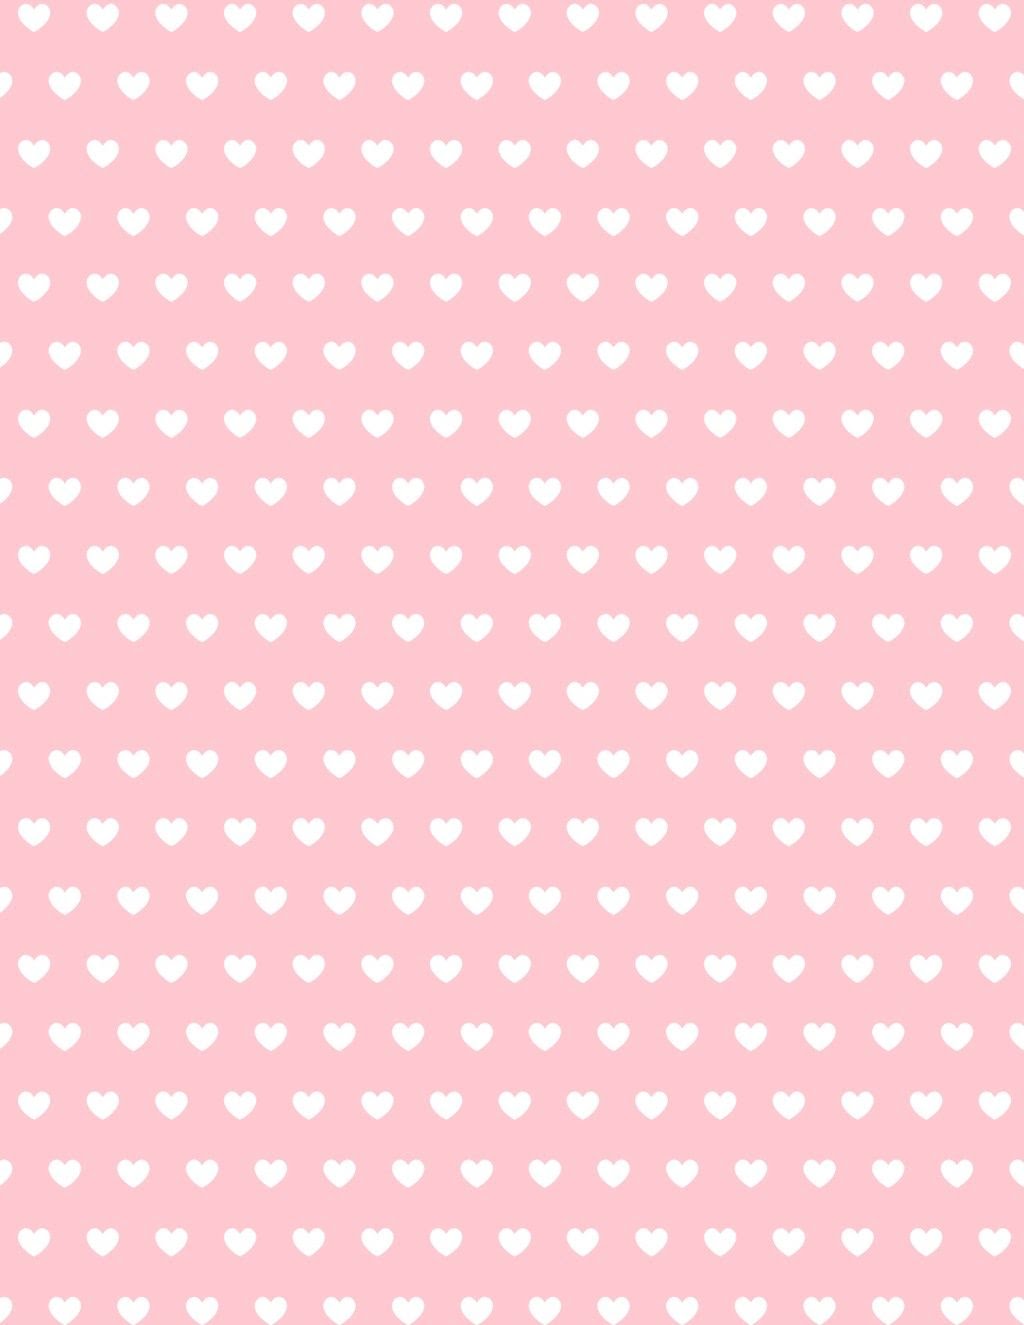 Free Valentine Hearts Scrapbook Paper Printable Paper Patterns Pink Scrapbook Paper Scrapbook Paper Designs